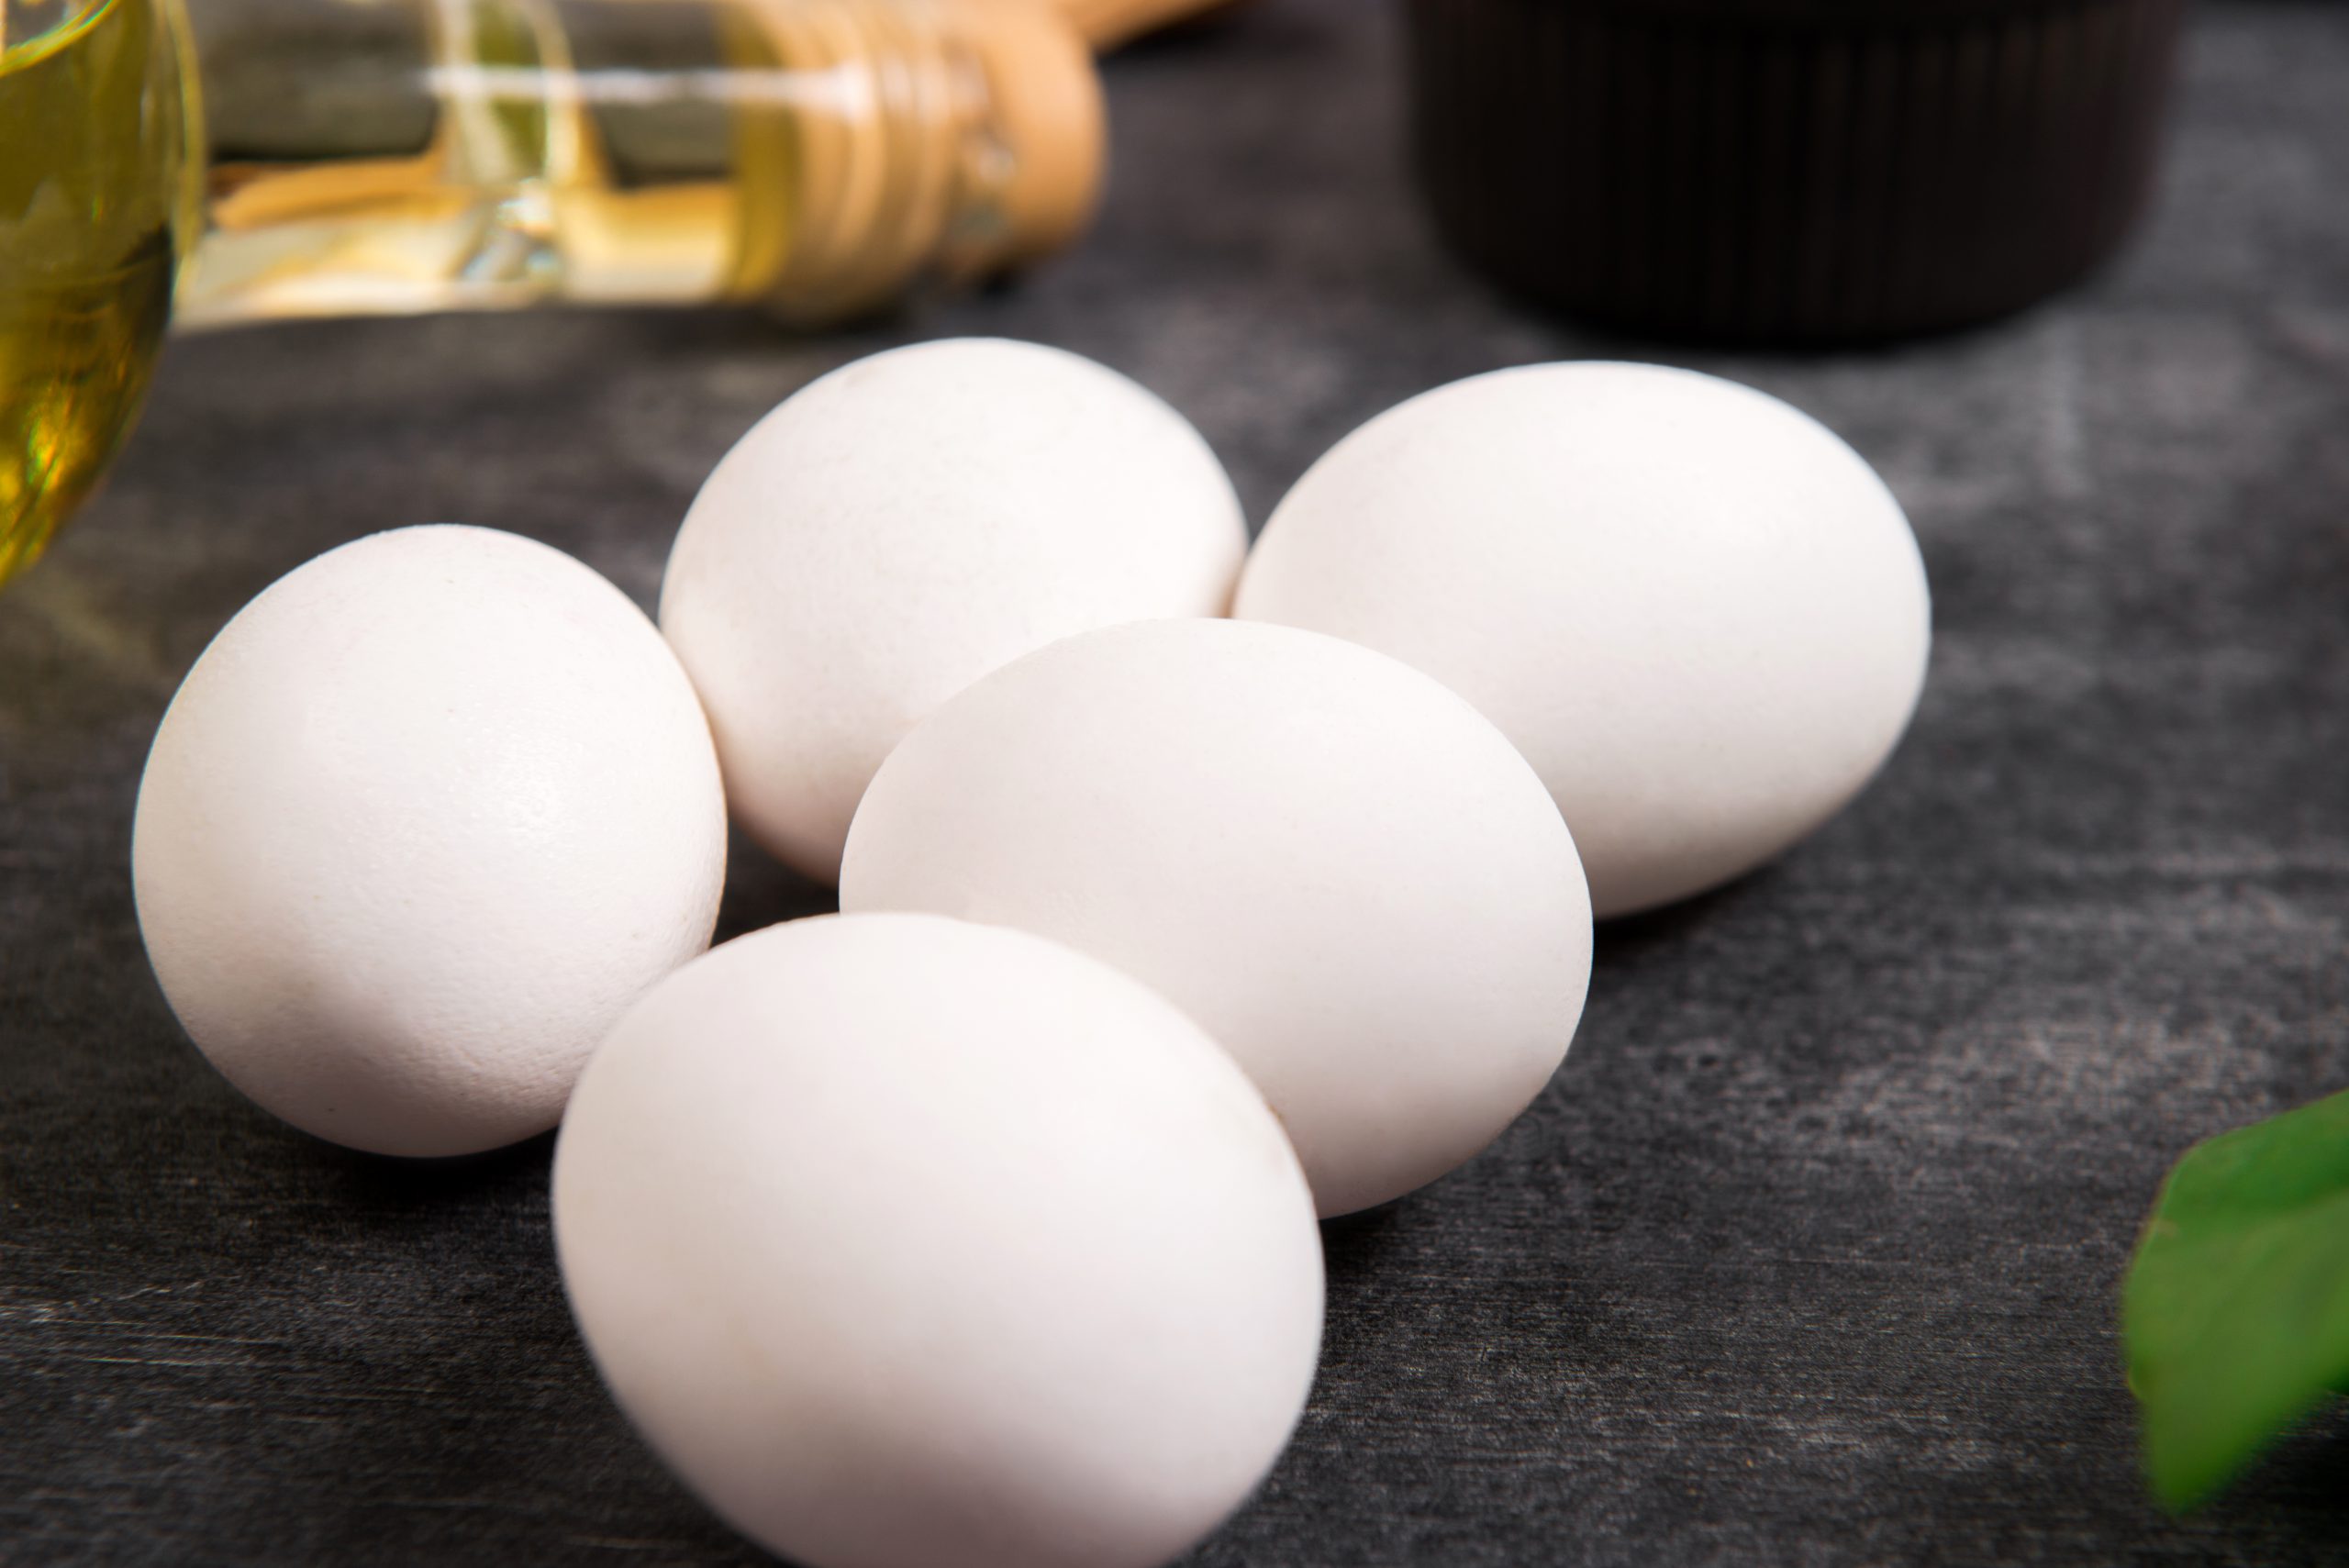 Jenis-jenis Telur Ayam Yang Perlu Kamu Tahu